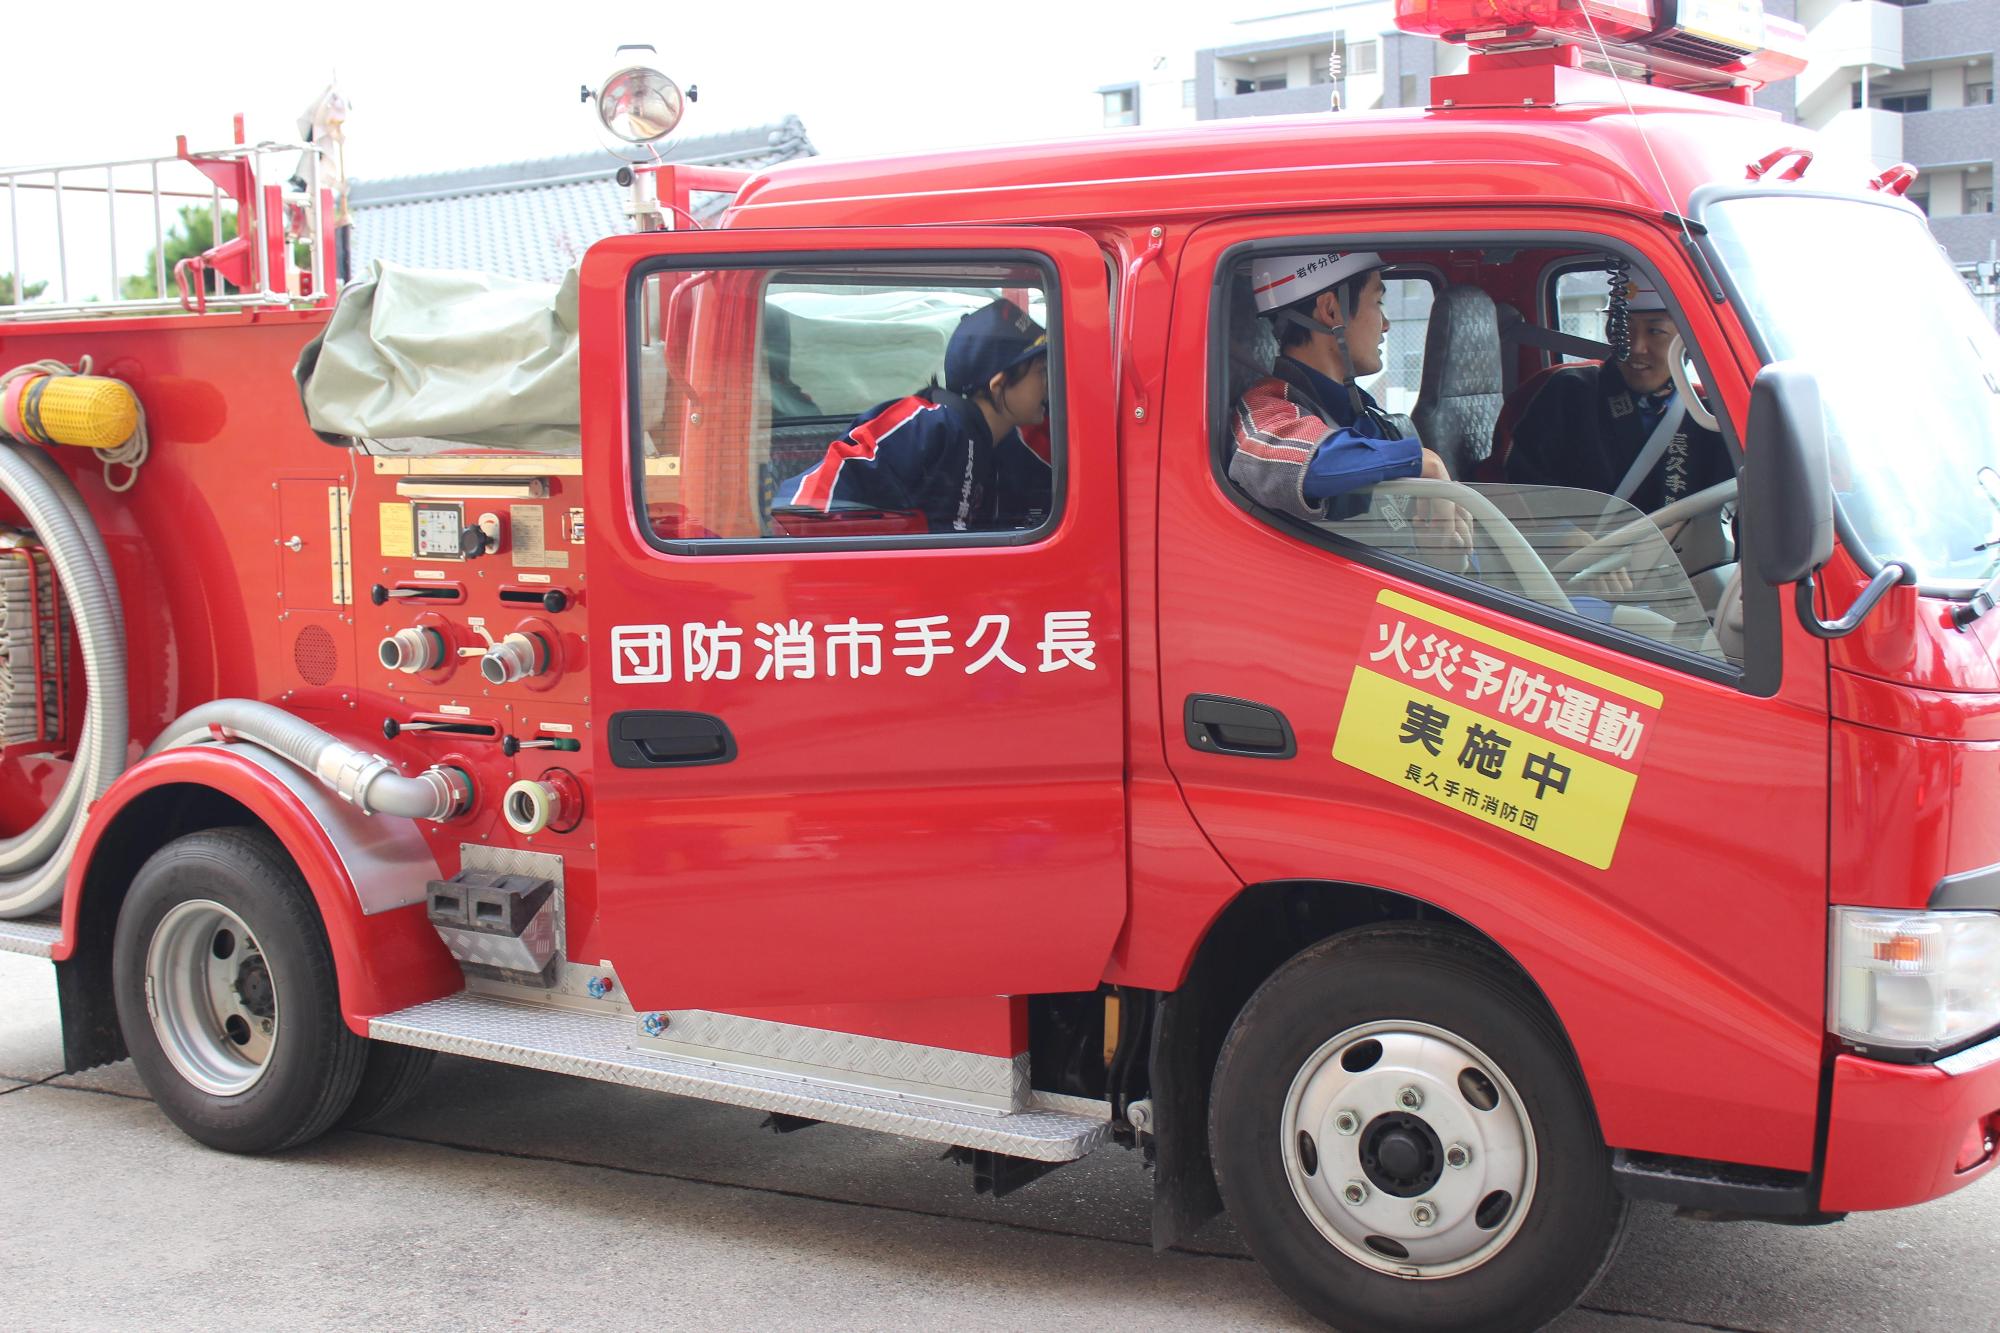 消防団員2名が消防車両の運転席と助手席に乗っており、後部座席に乗り込むキッズ団員の写真